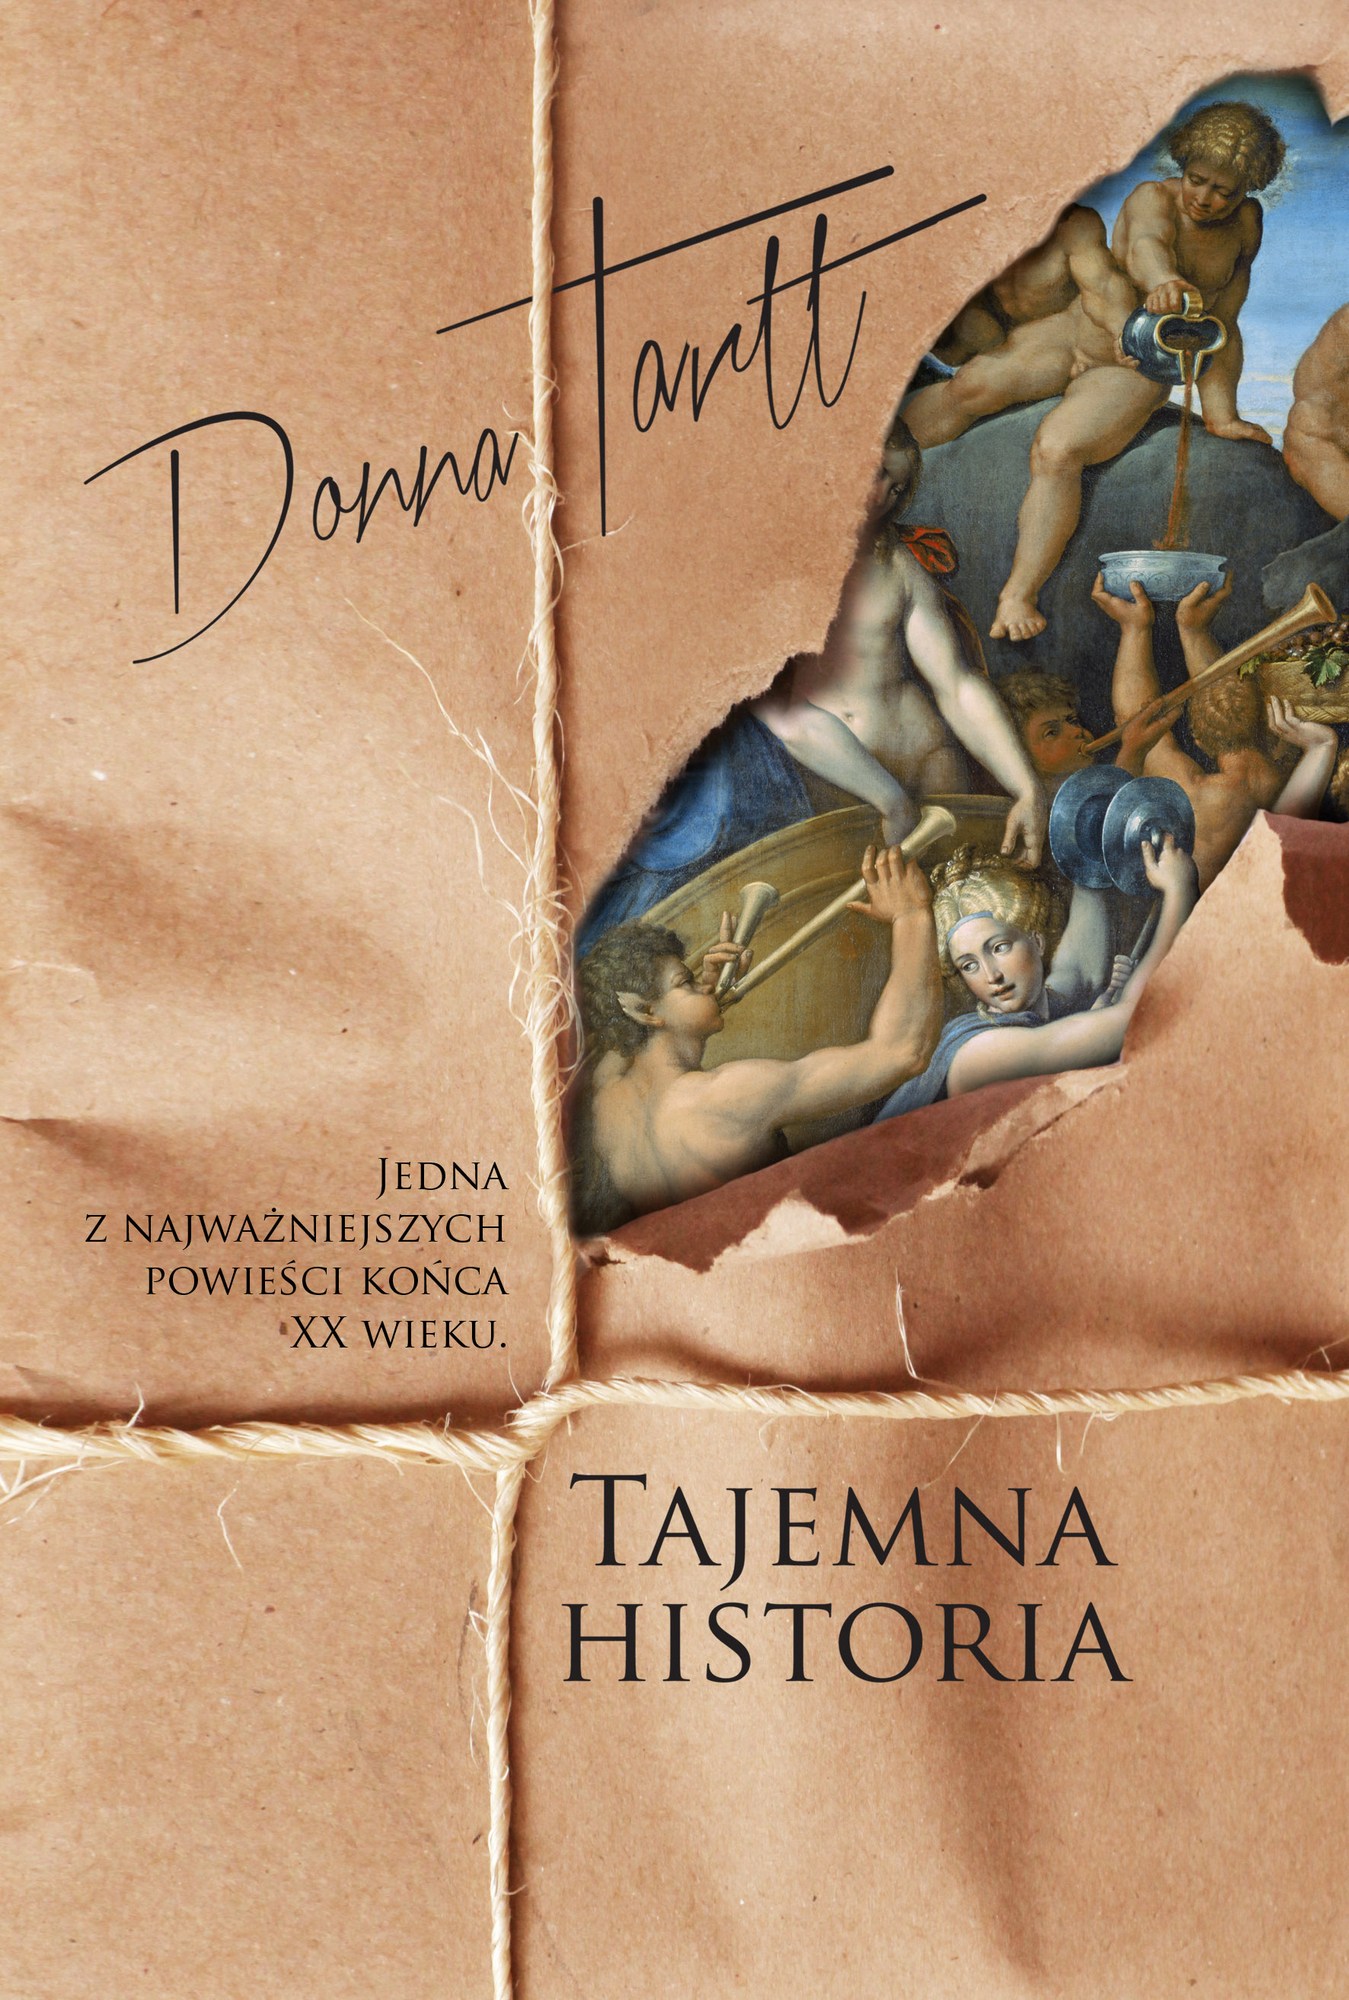 Donna Tartt, „Tajemna historia” – okładka (źródło: materiały prasowe wydawcy)